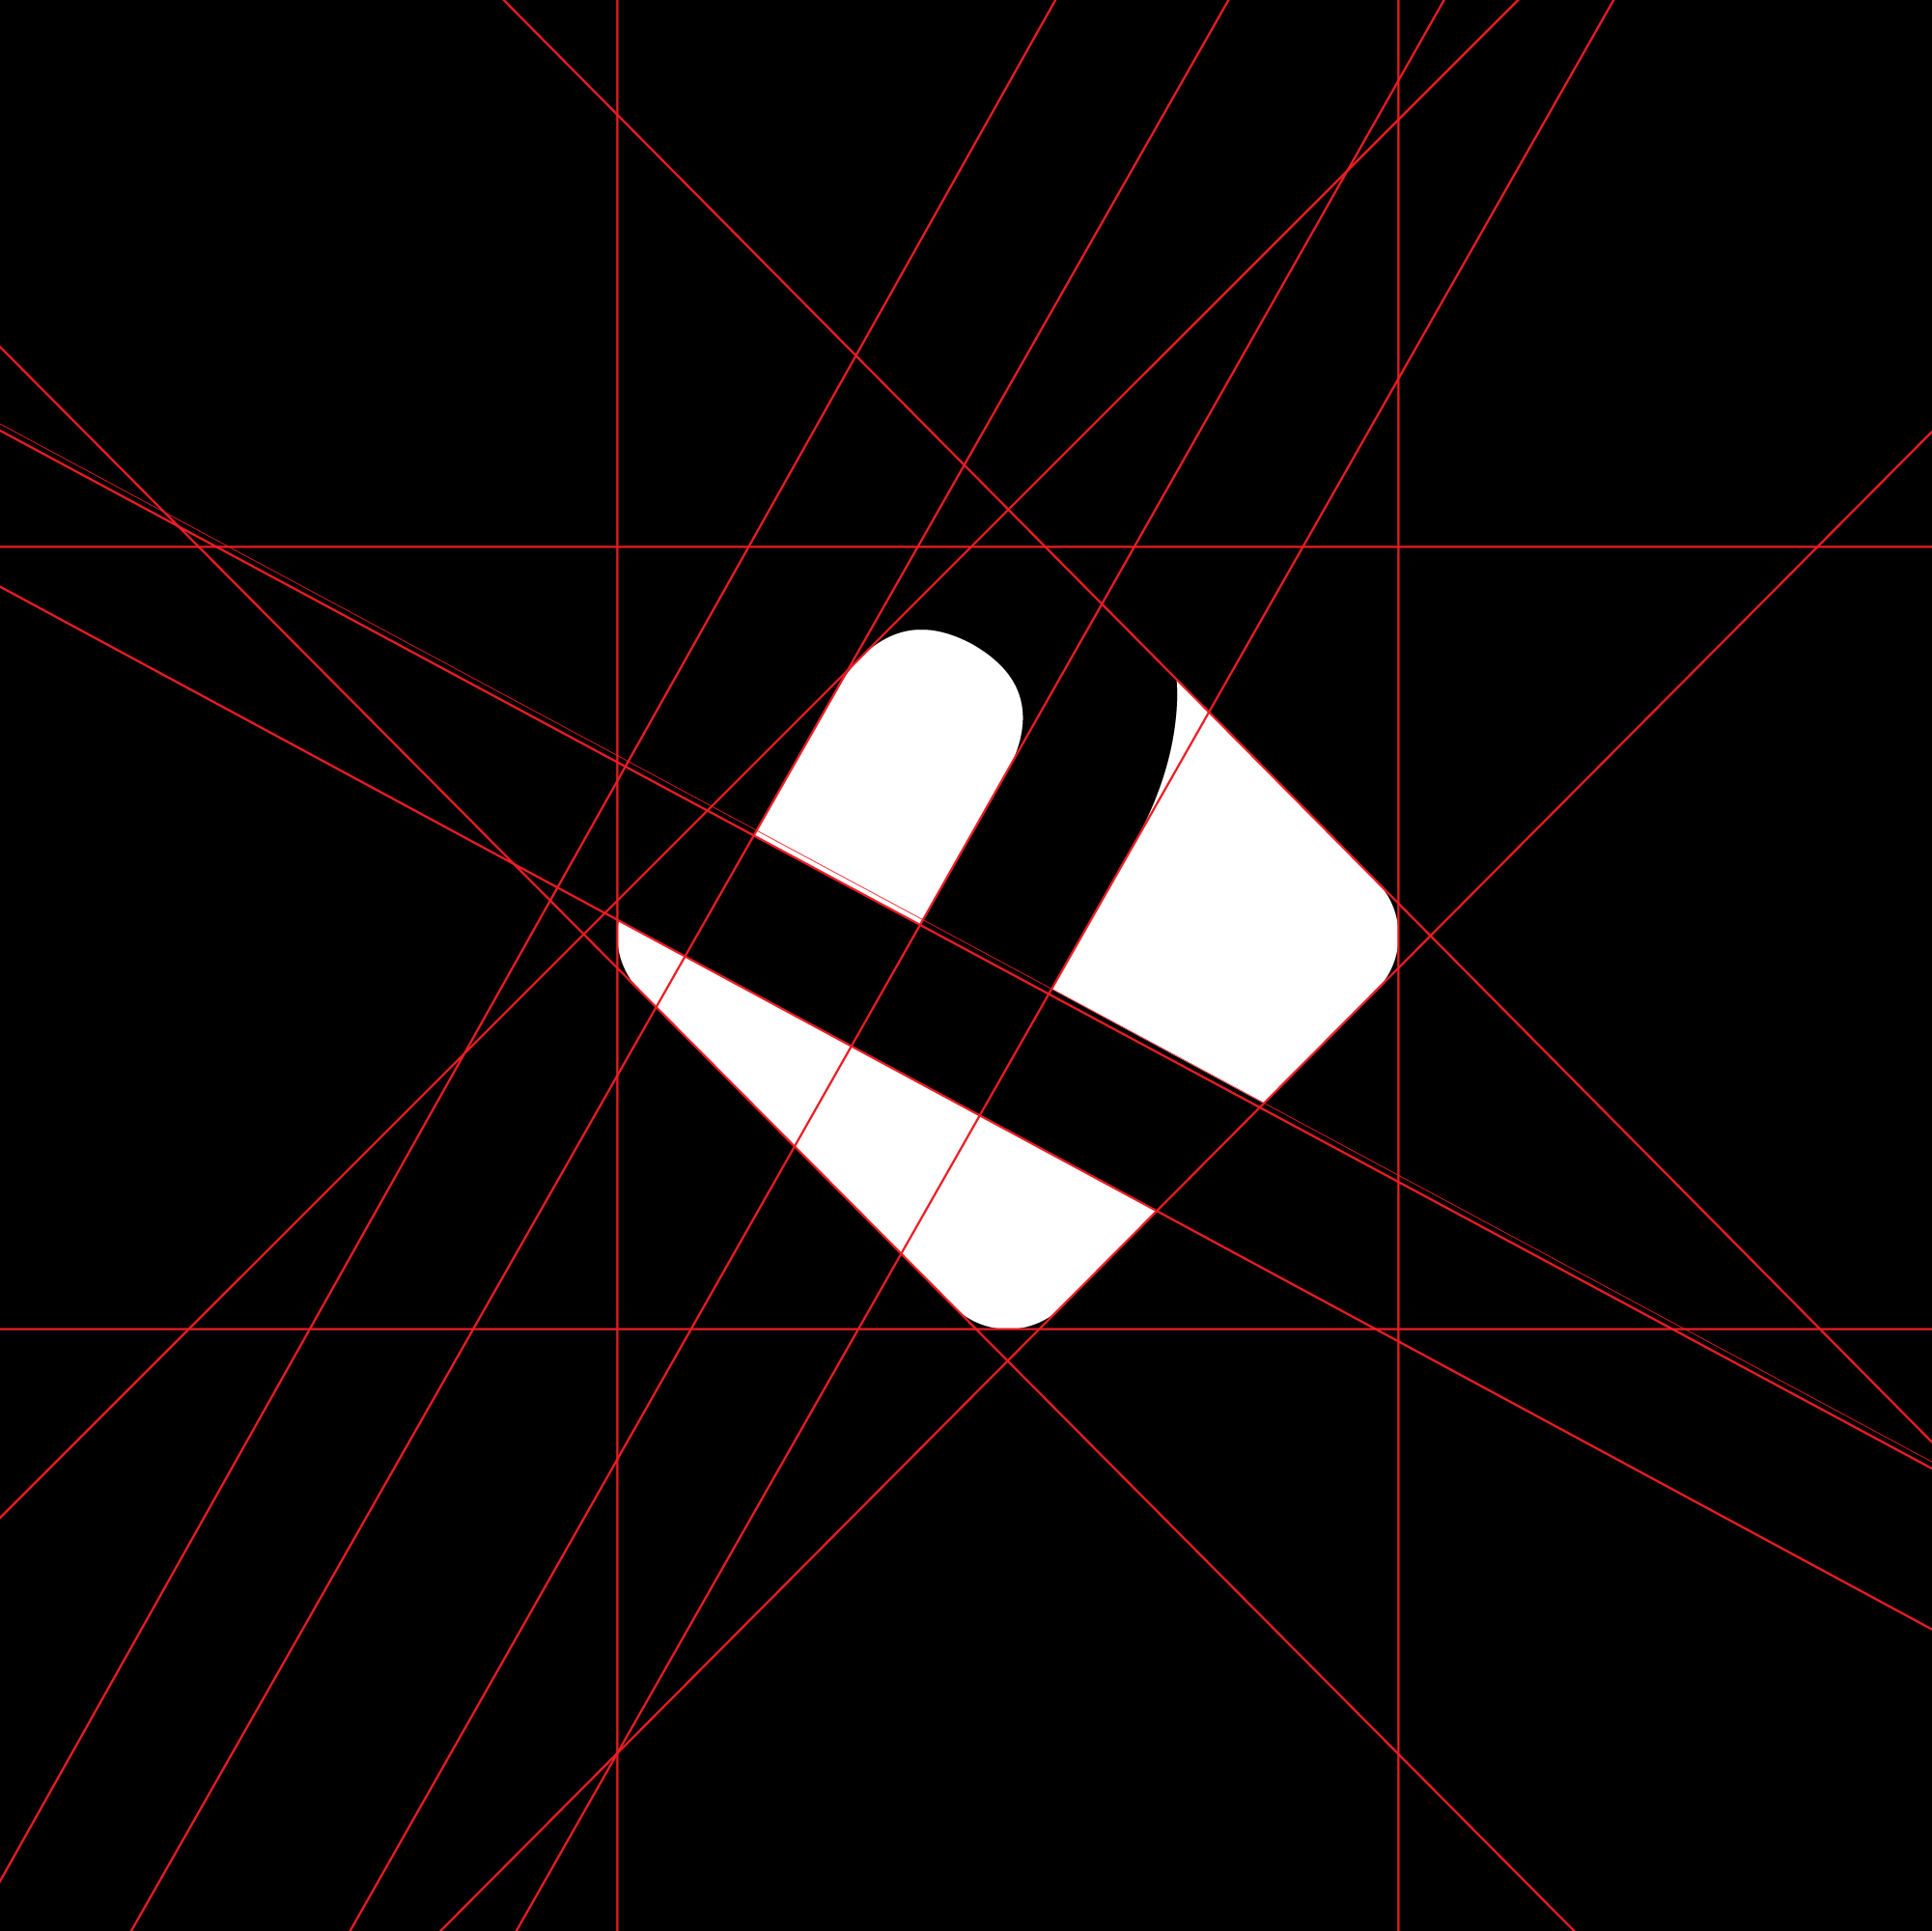 logo-design-letter-black-white-letter-alphabet-minimalistic